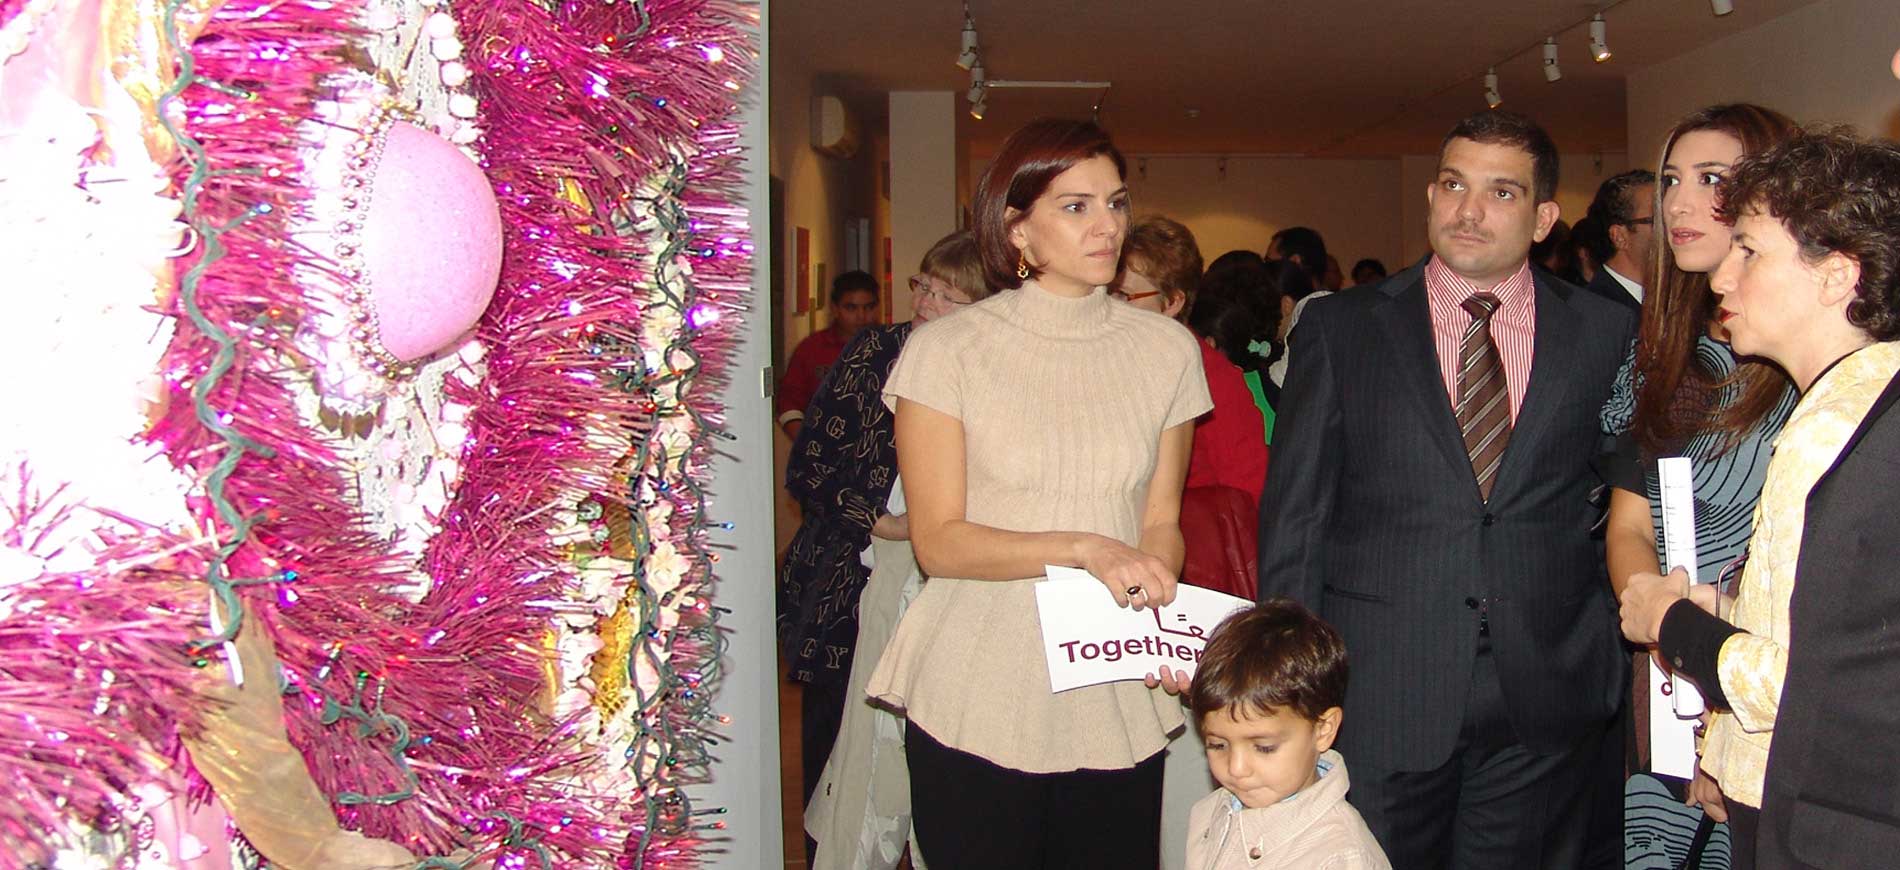 Presse zu Begegnungen in Jordanien und zur Ausstellung Together in Amman organisiert von der Eva Mueller Kunstberatung